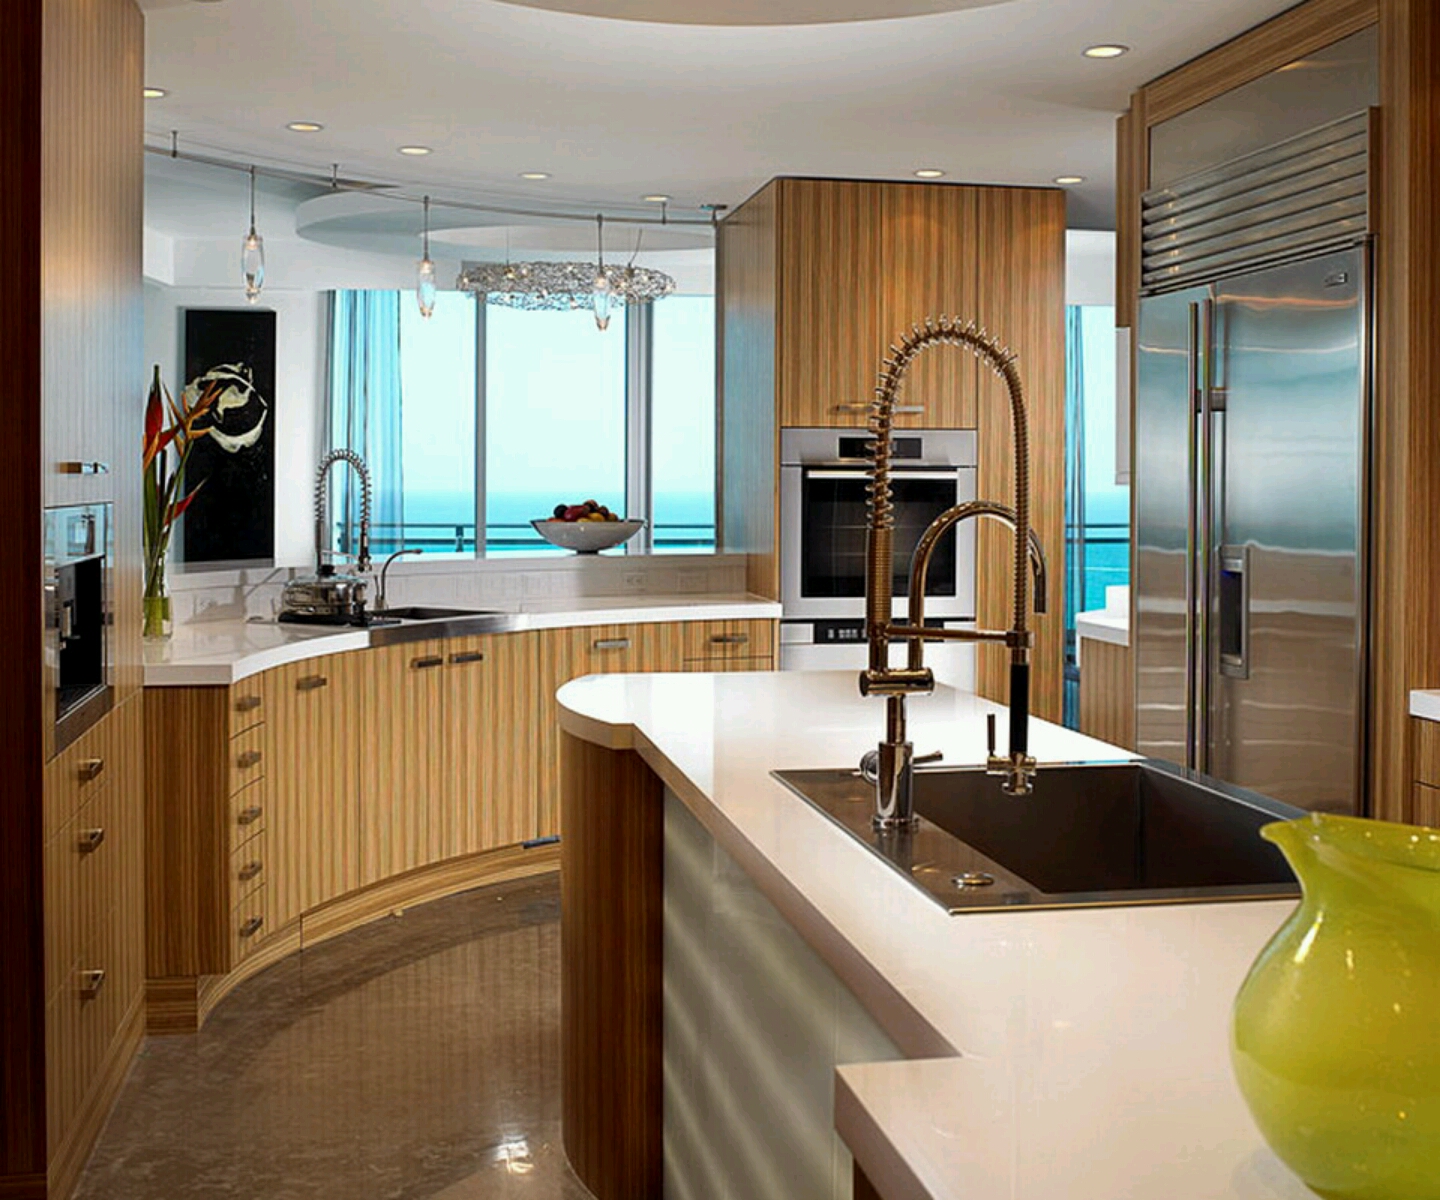 Modern wooden kitchen cabinets designs. | Interior Design